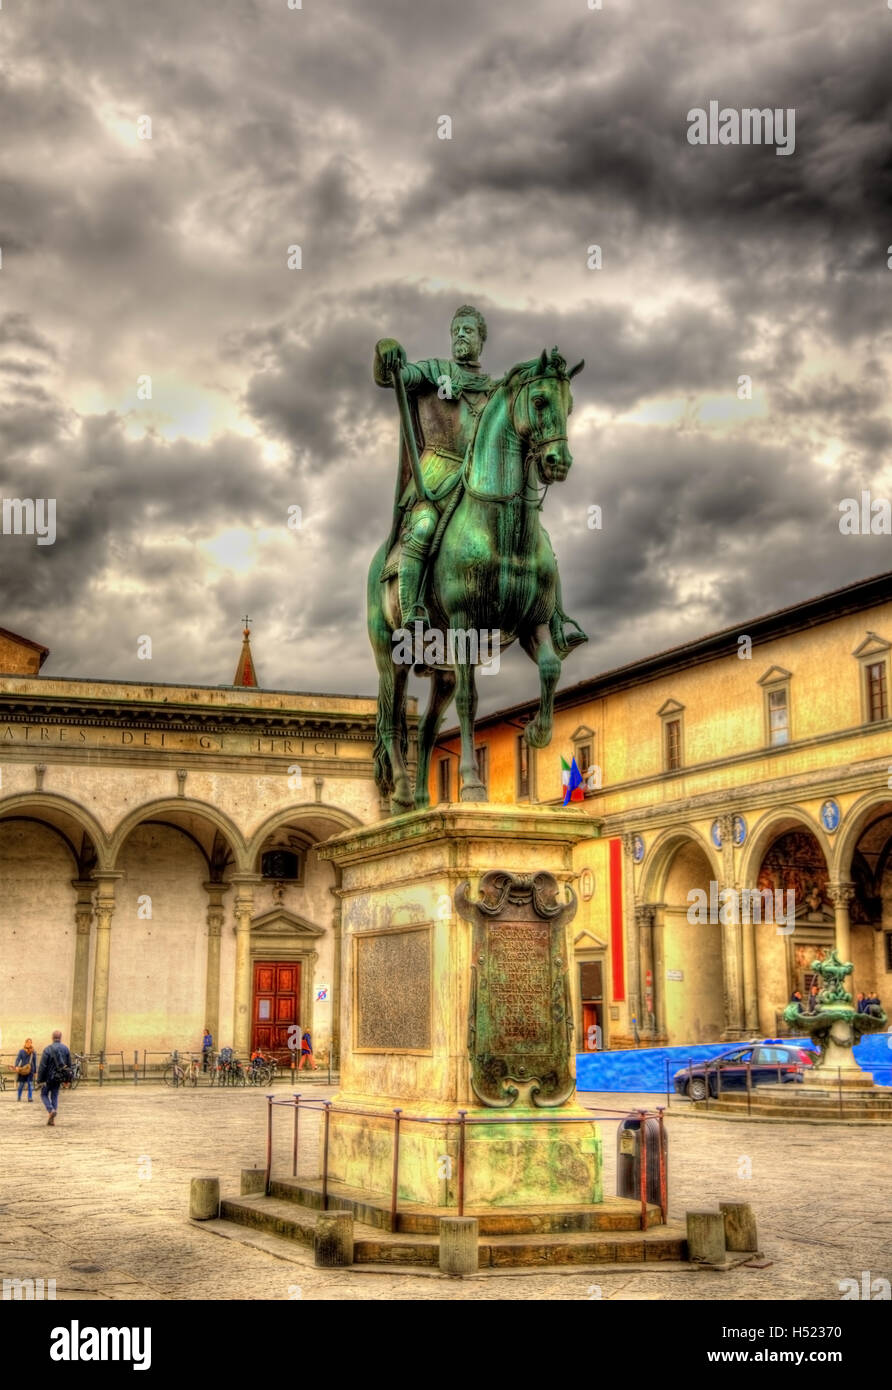 Statue of Ferdinando I de Medici on Santissima Annunziata square Stock Photo